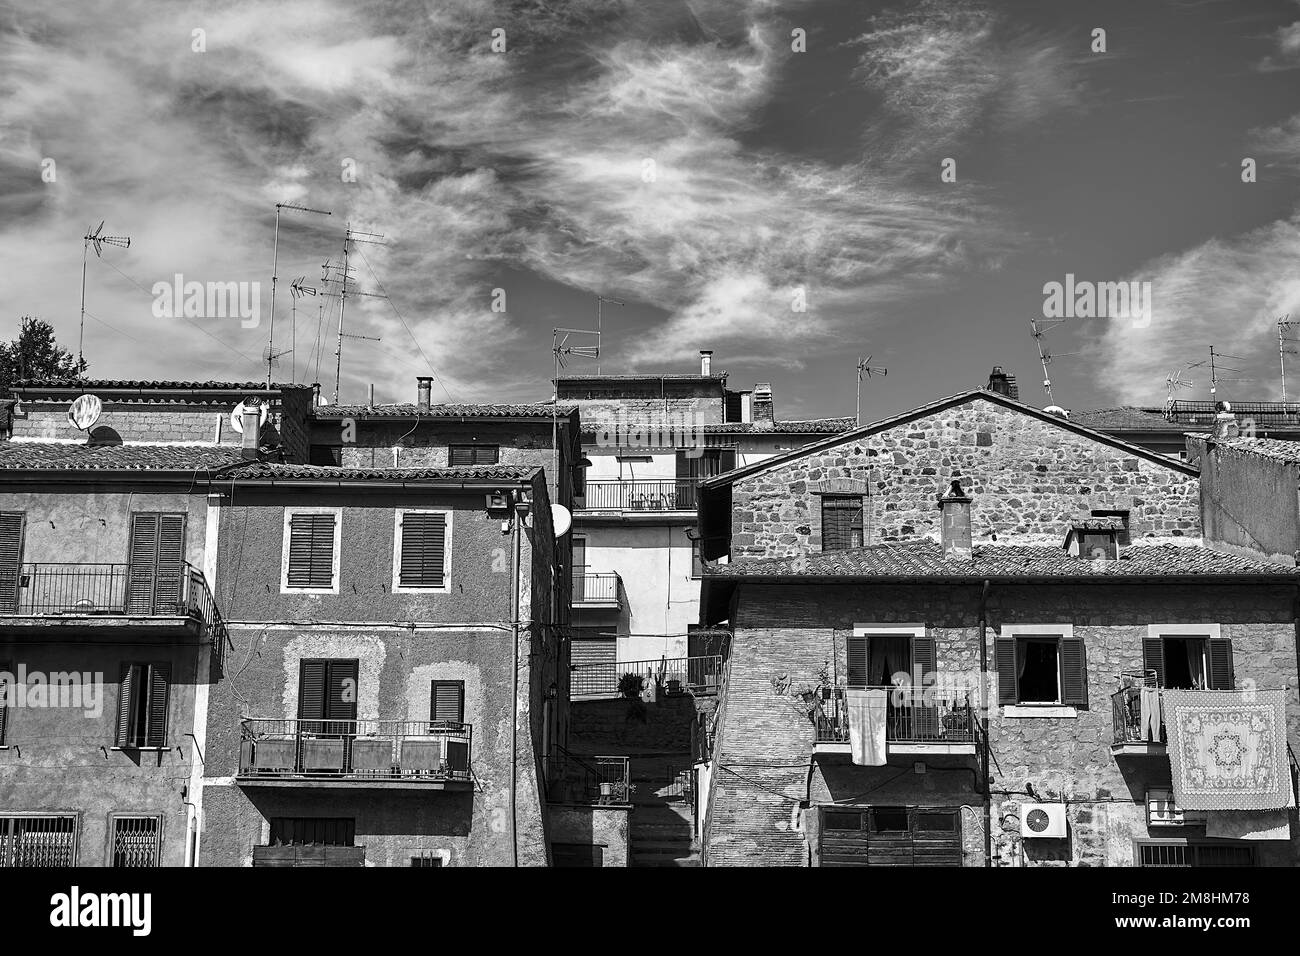 Toits avec antennes et murs avec fenêtres et balcons dans une petite ville de Toscane, Italie, monochrome Banque D'Images